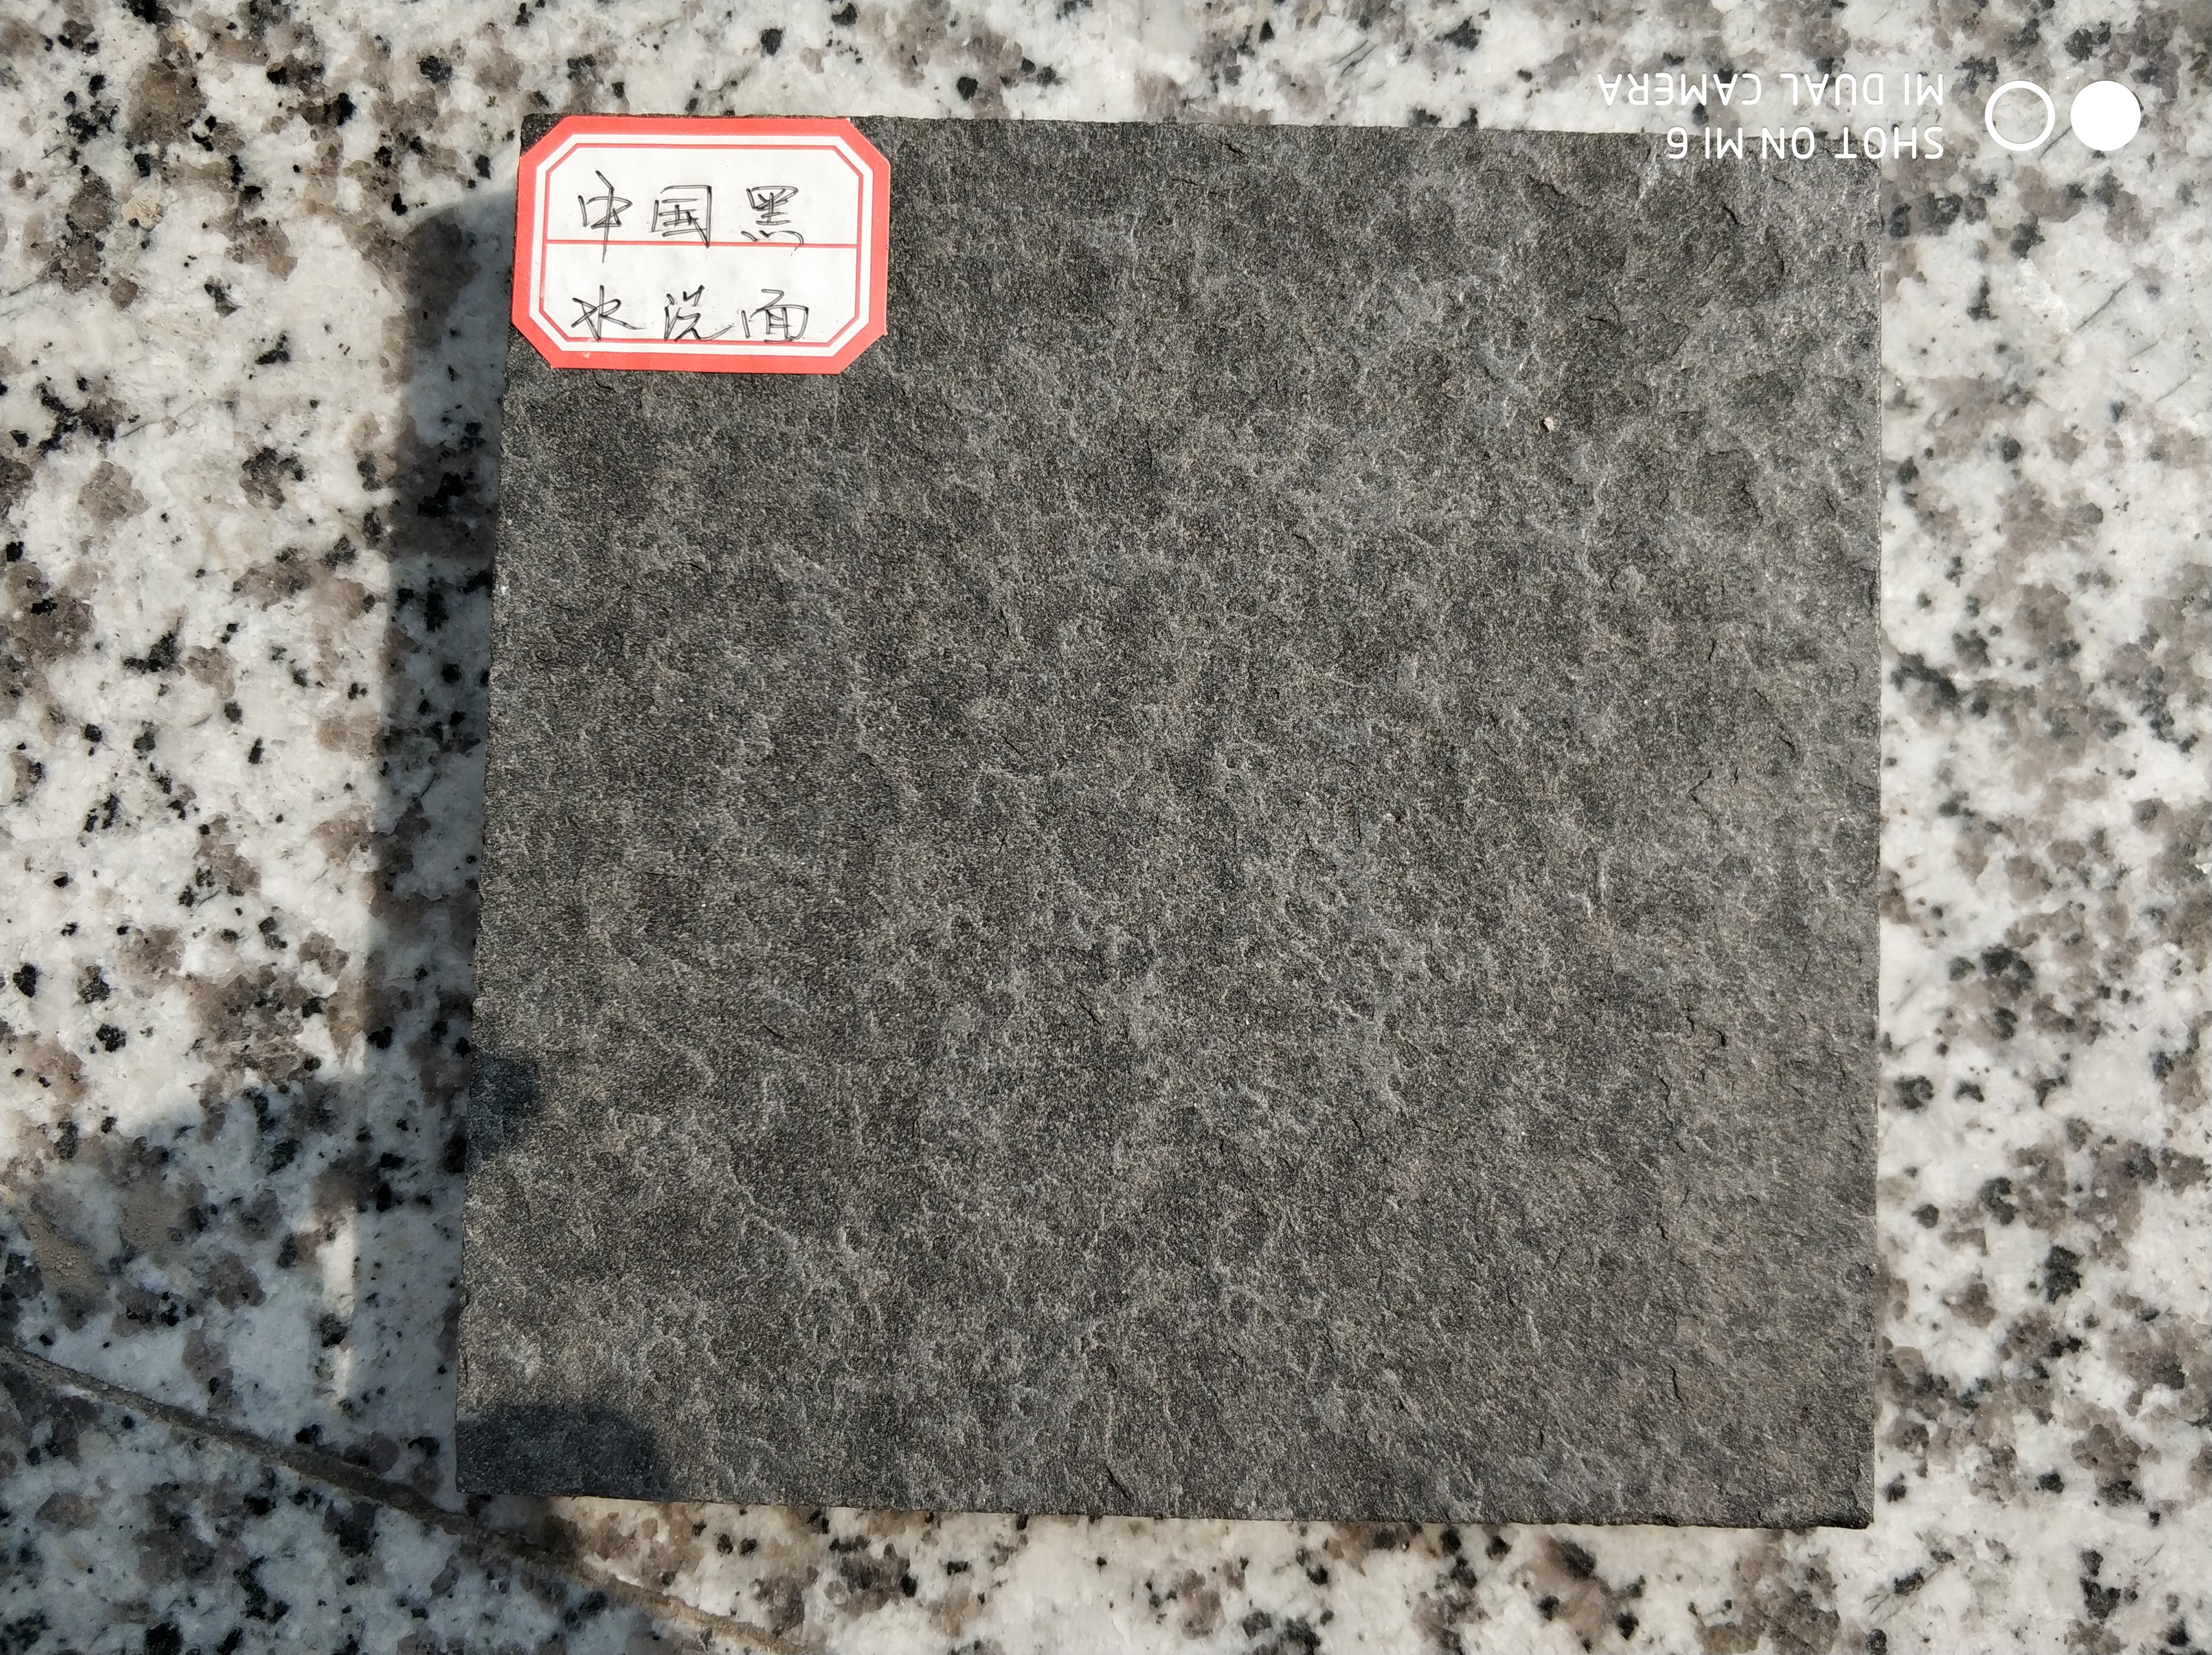 中国黑石材厂家